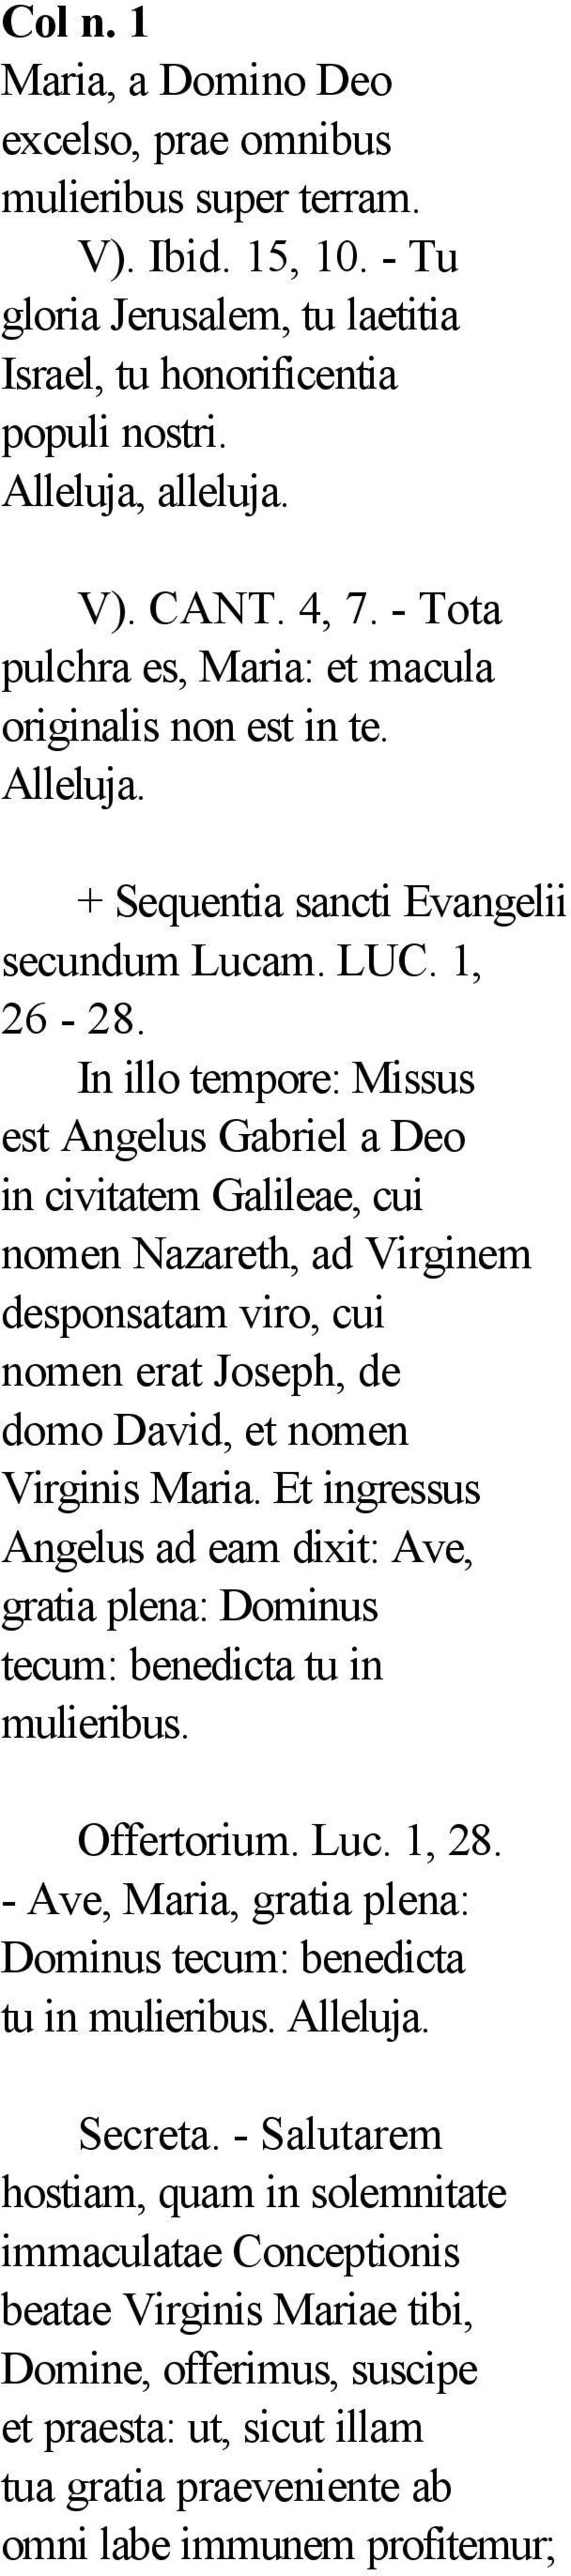 In illo tempore: Missus est Angelus Gabriel a Deo in civitatem Galileae, cui nomen Nazareth, ad Virginem desponsatam viro, cui nomen erat Joseph, de domo David, et nomen Virginis Maria.